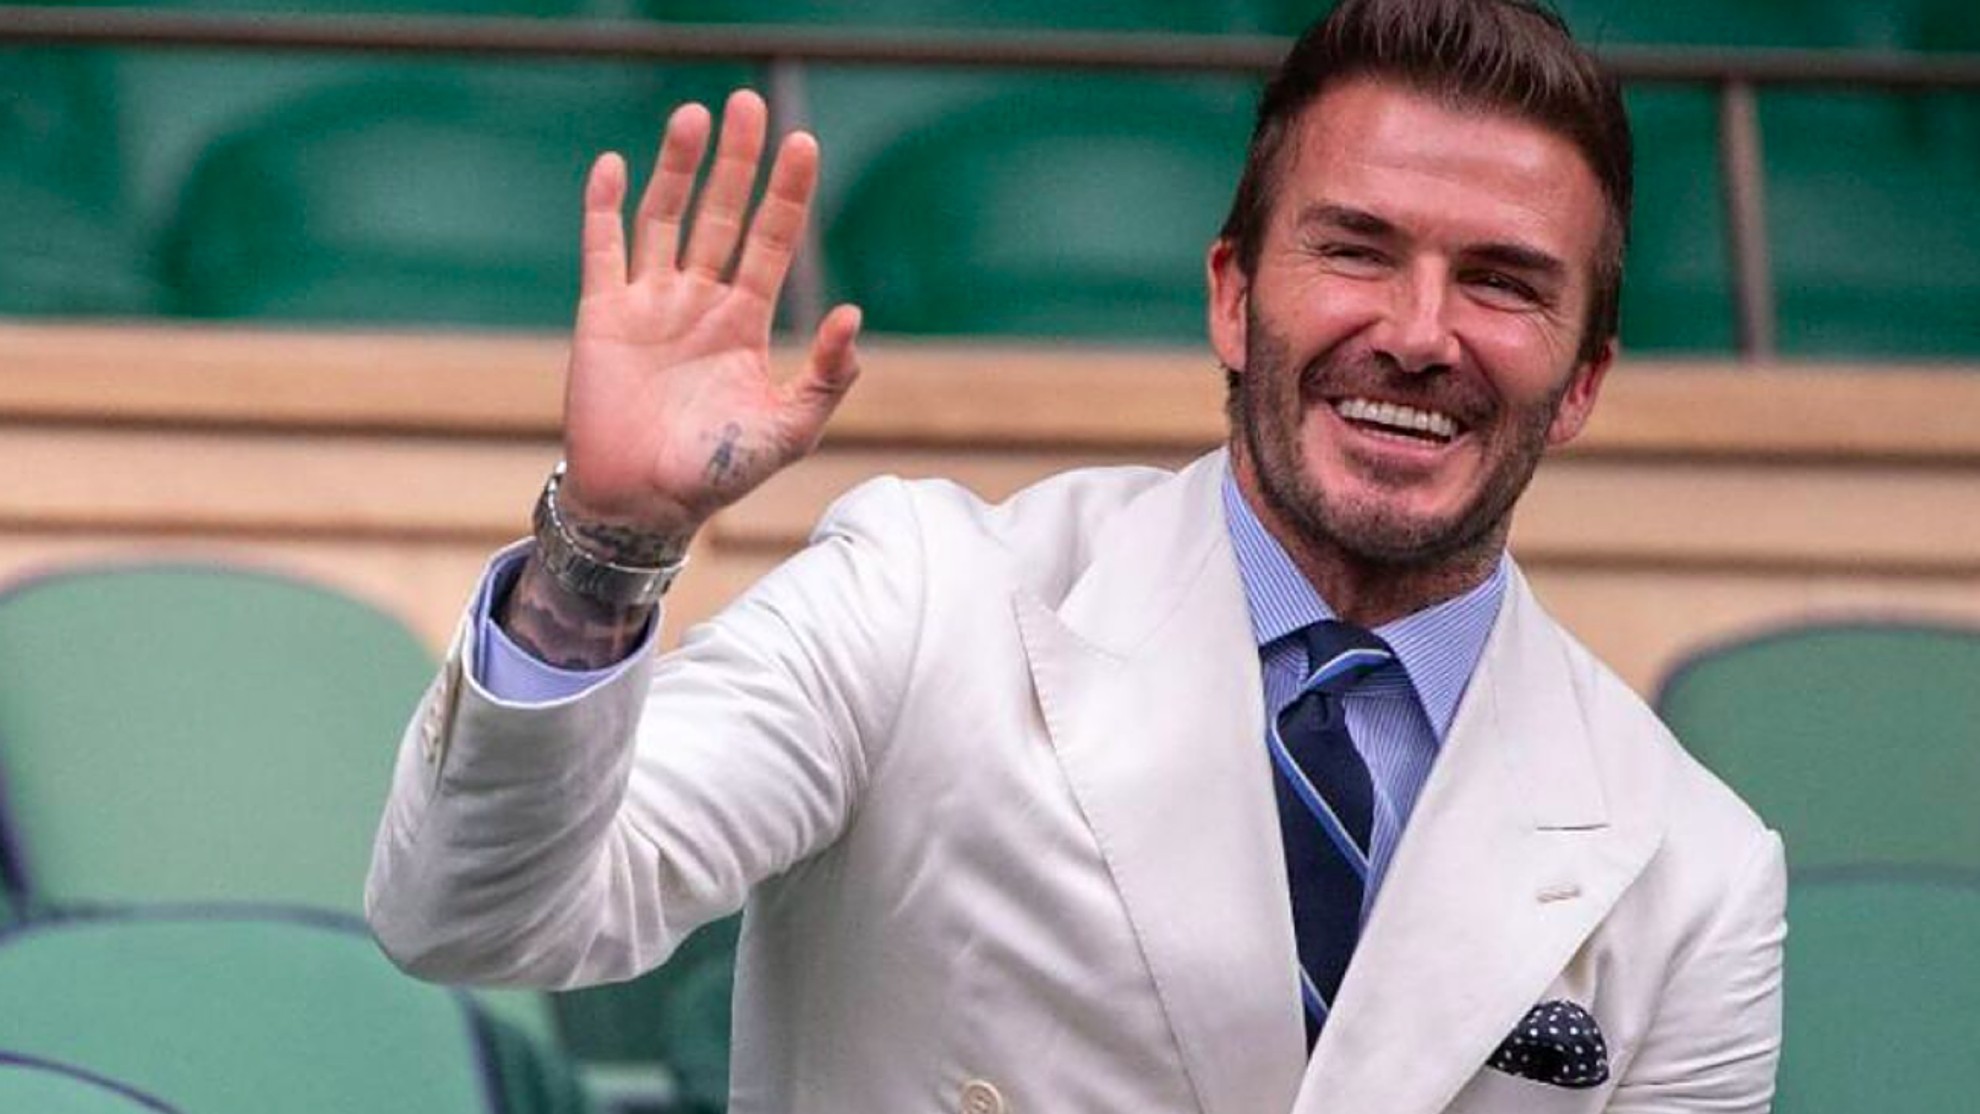 Furor por la minicartera y el maletín de lujo de Goyard que David Beckham  lució en París - LA NACION